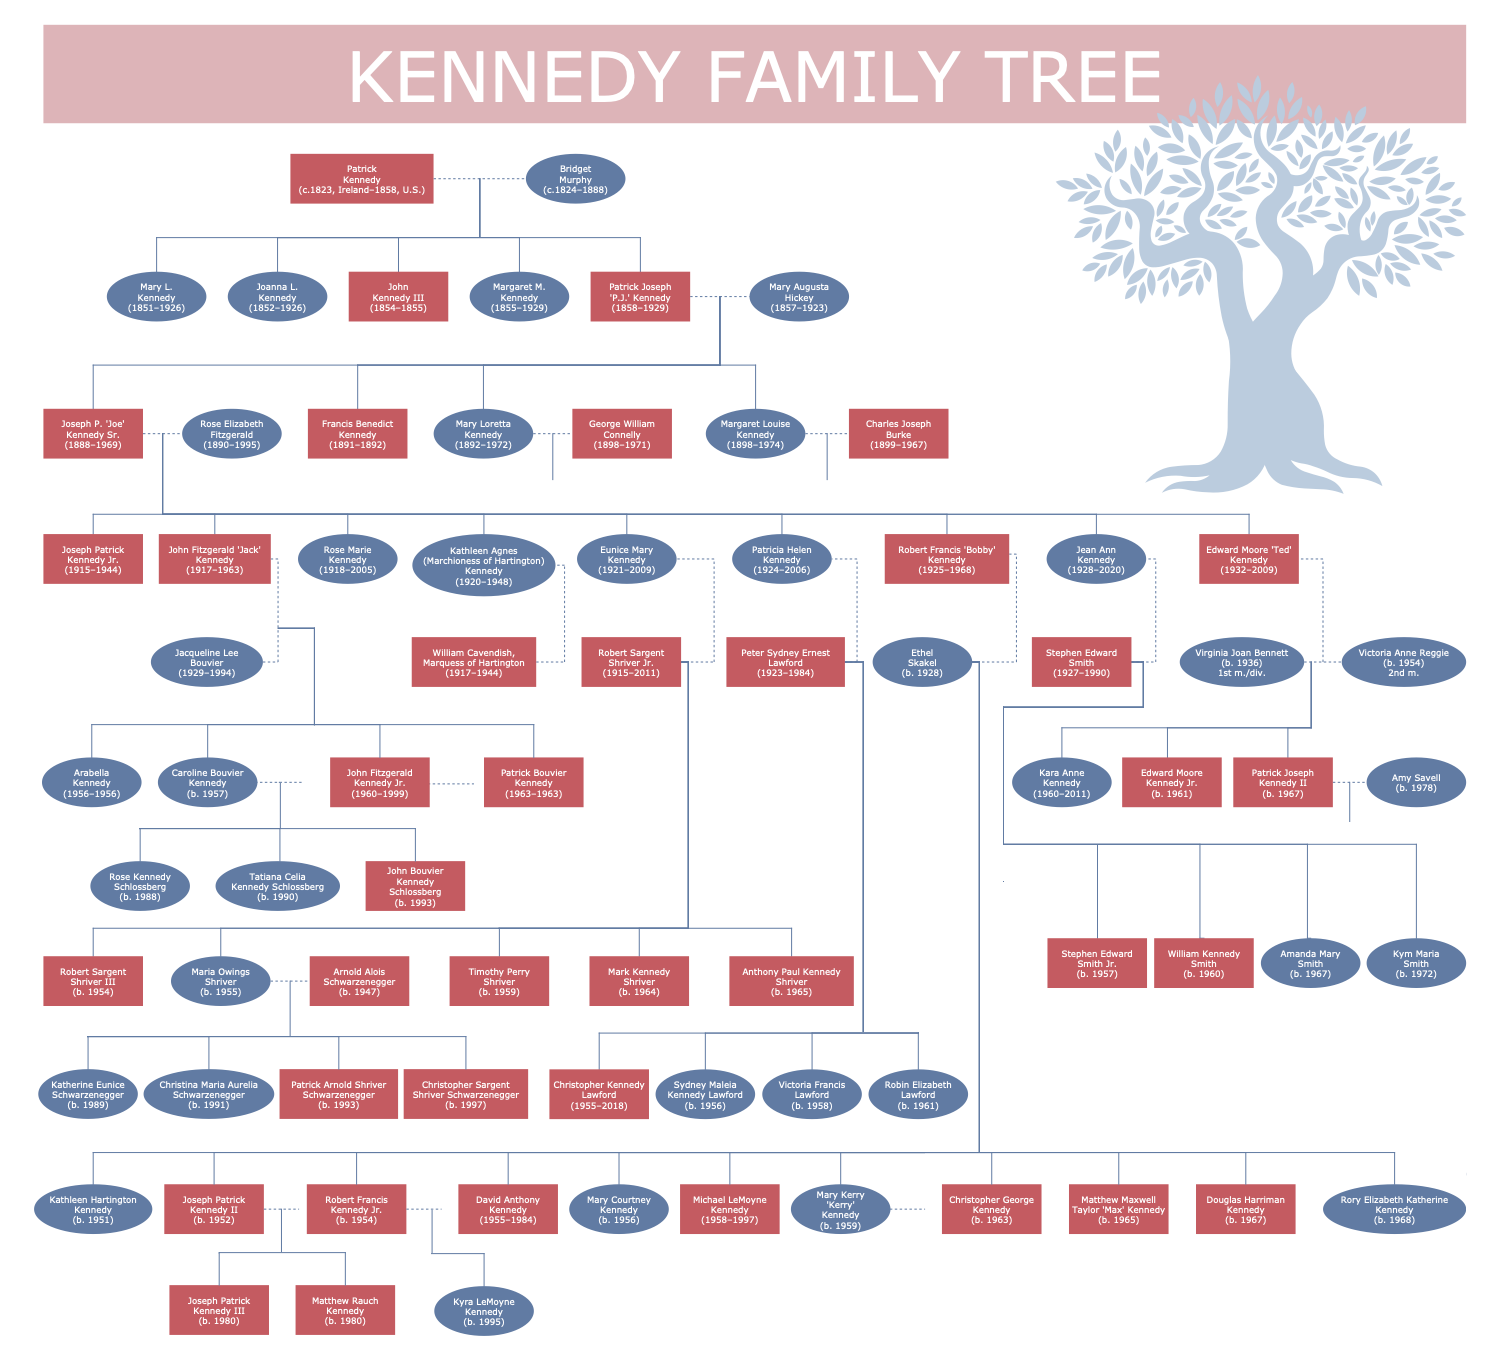 Kennedy Family Tree